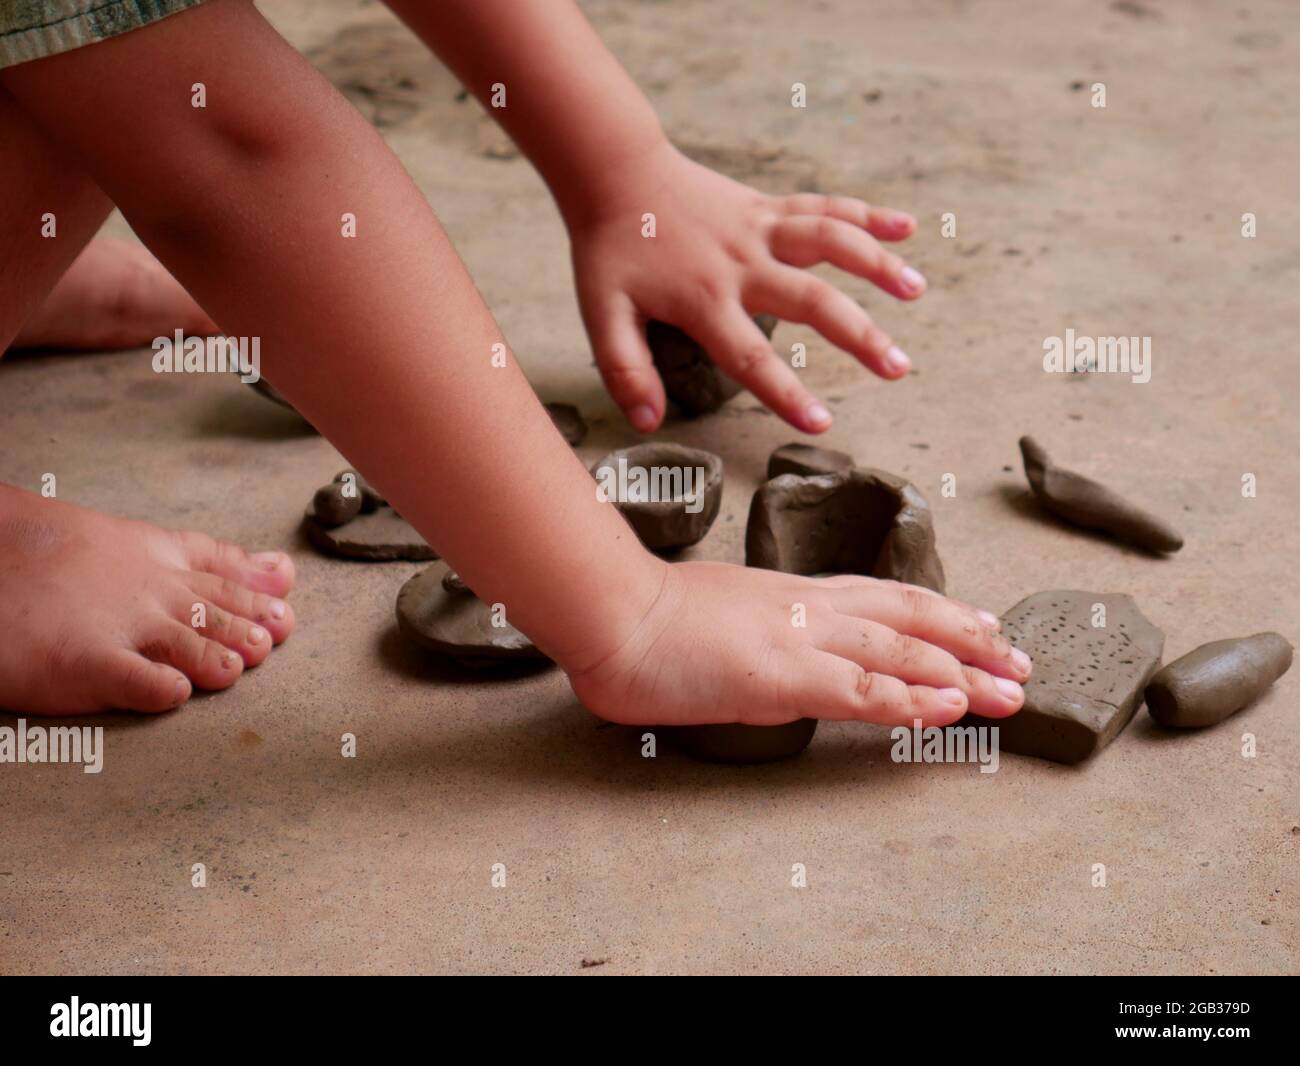 Les enfants qui font de la terre ont fait du jouet sur une surface en béton sans image du visage. Banque D'Images